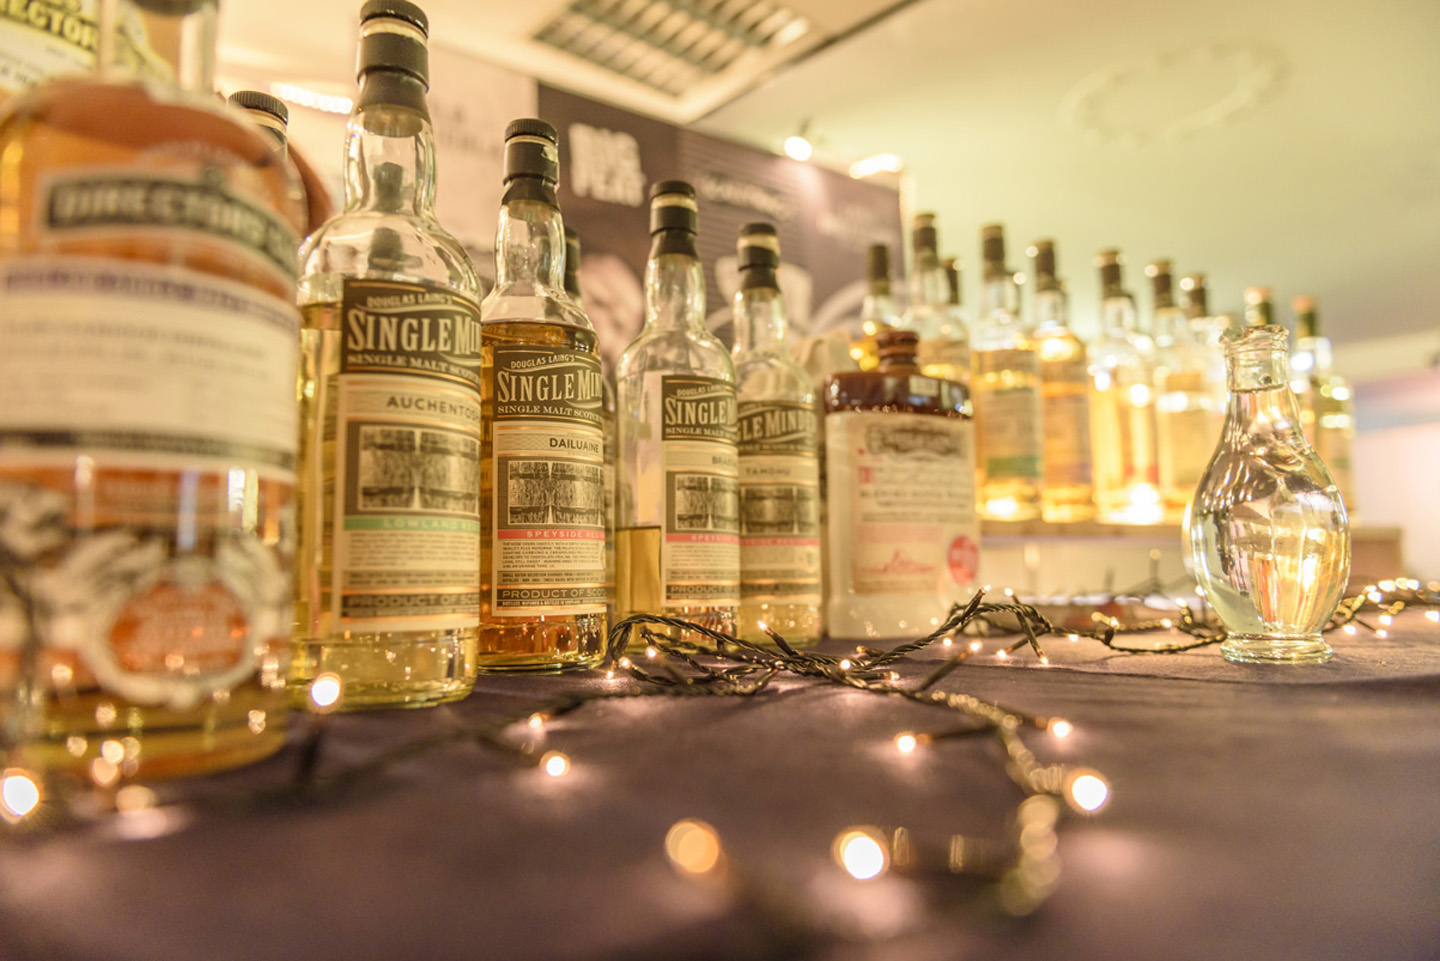 Eine Reihe fast gleicher Single Malt Whiskyfalschen steht auf einem Tisch mit Lichterkette und einem Glaskrug mit Wasser.